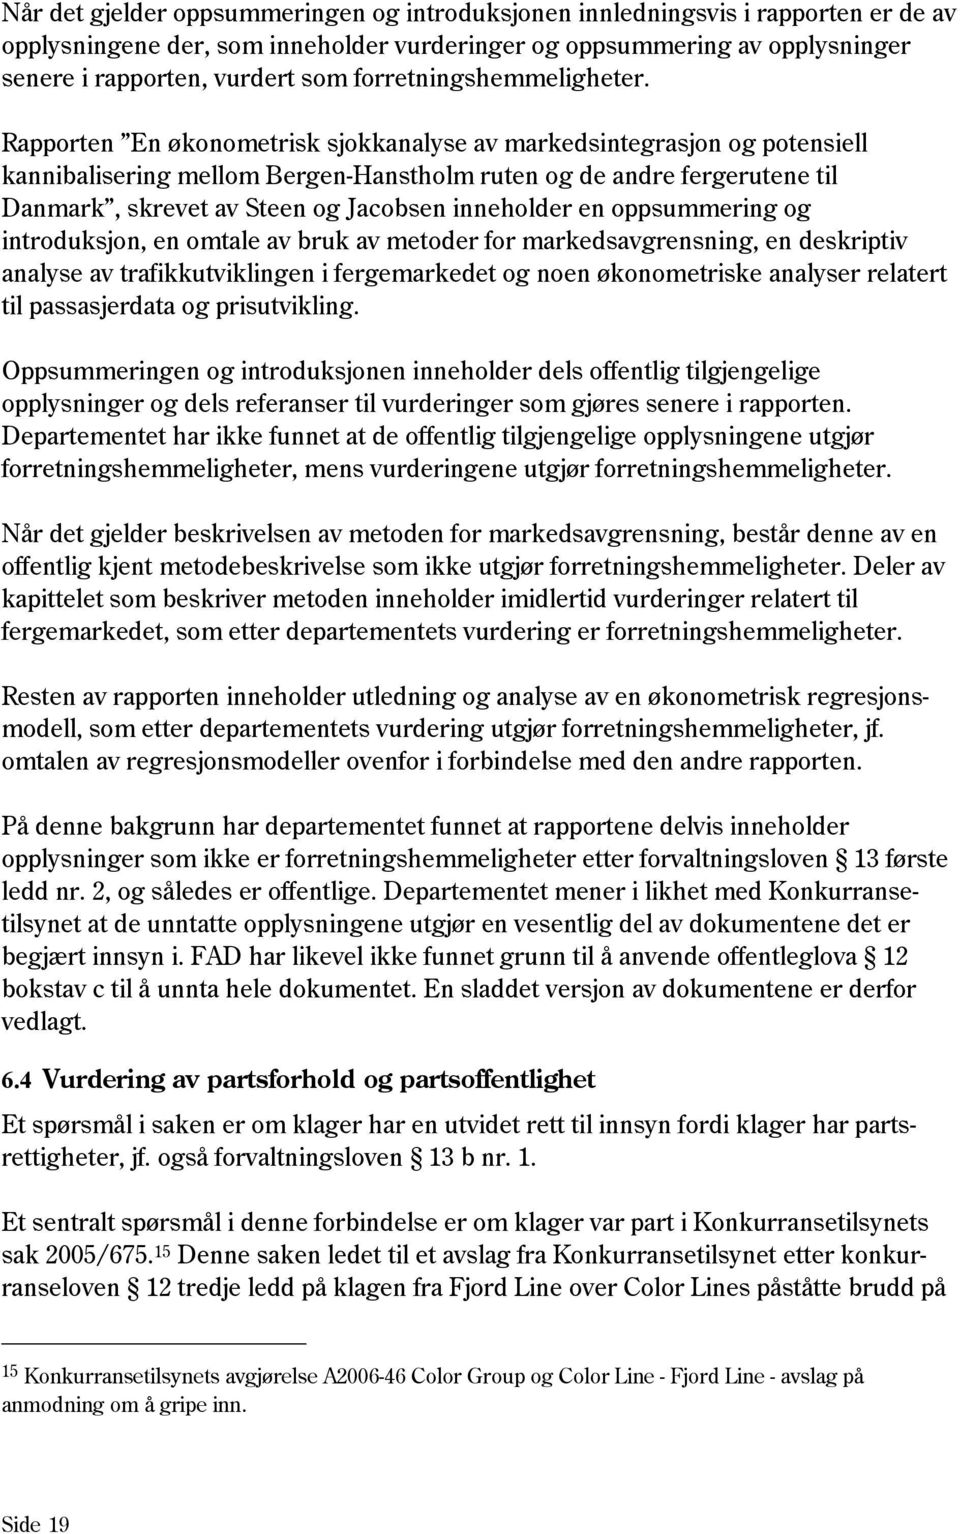 Rapporten En økonometrisk sjokkanalyse av markedsintegrasjon og potensiell kannibalisering mellom Bergen-Hanstholm ruten og de andre fergerutene til Danmark, skrevet av Steen og Jacobsen inneholder